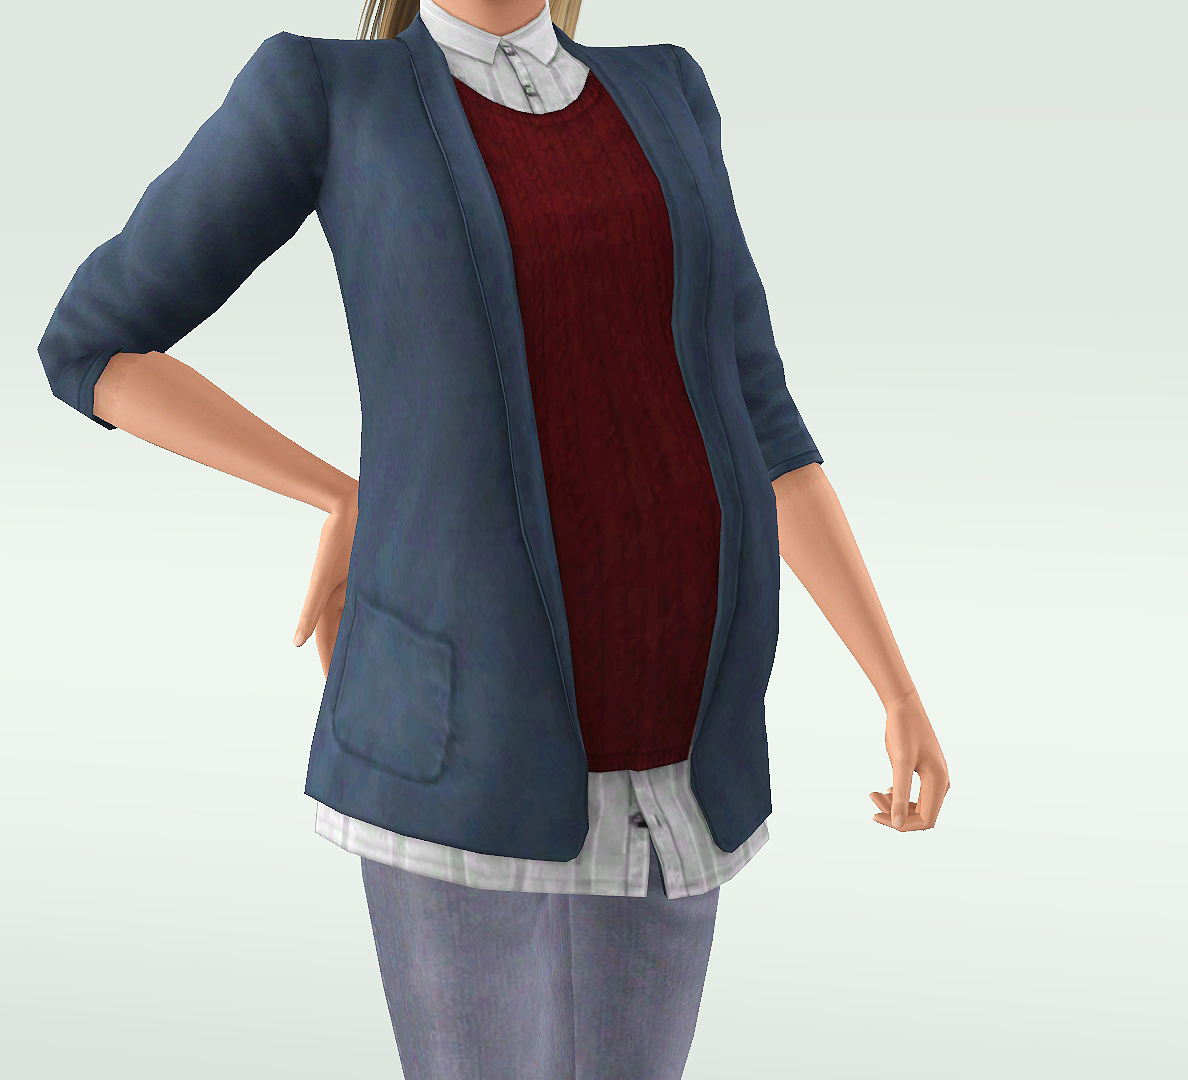 одежда - The sims 3: Одежда для будущих мам - Страница 3 Screenshot-231b